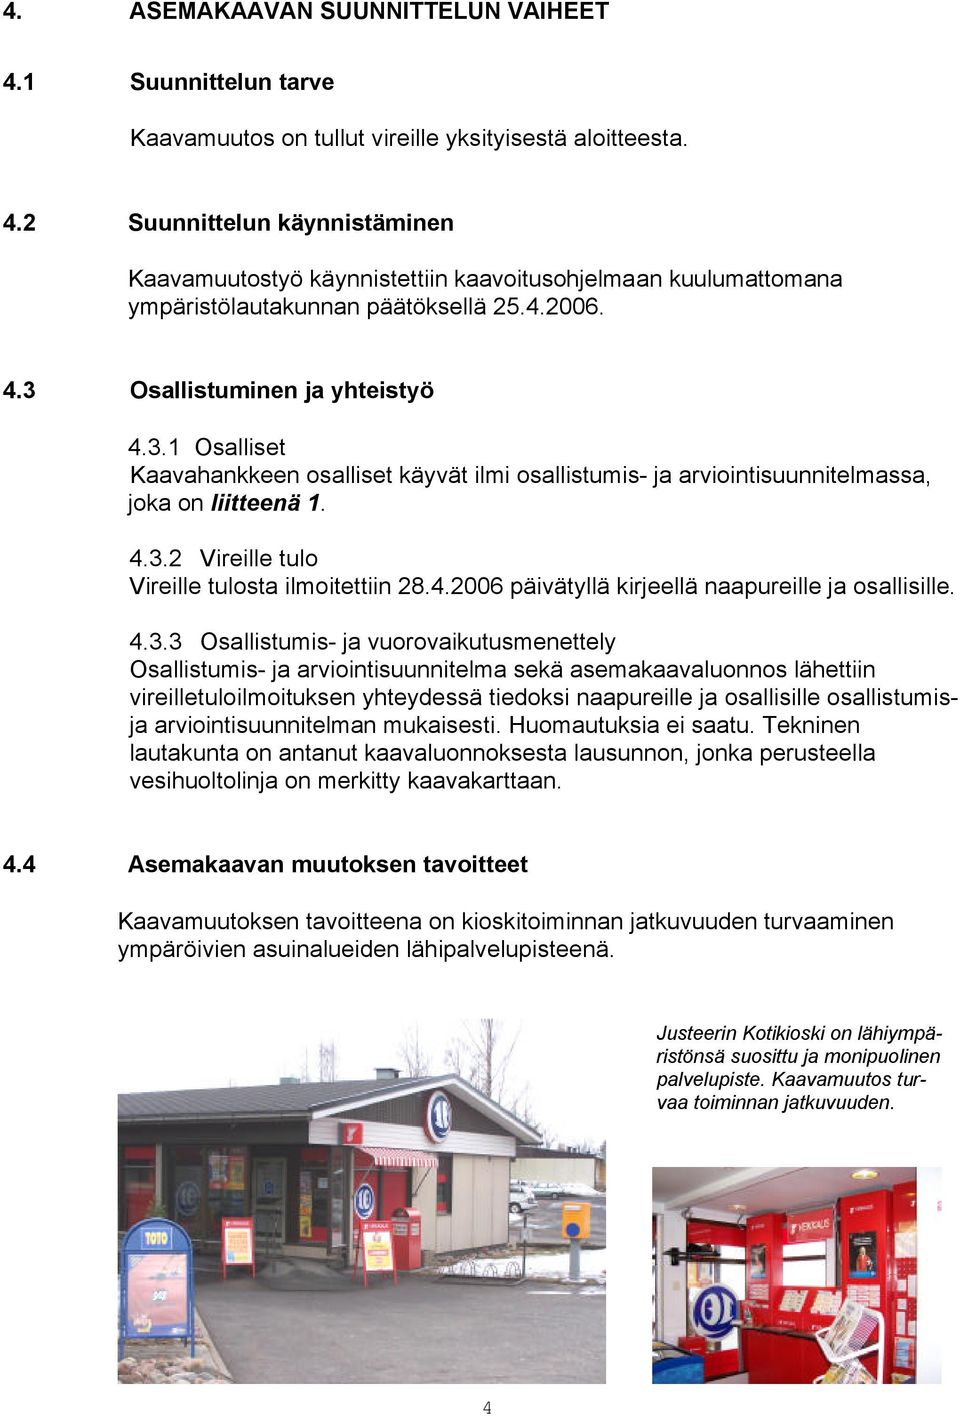 4.2006 päivätyllä kirjeellä naapureille ja osallisille. 4.3.